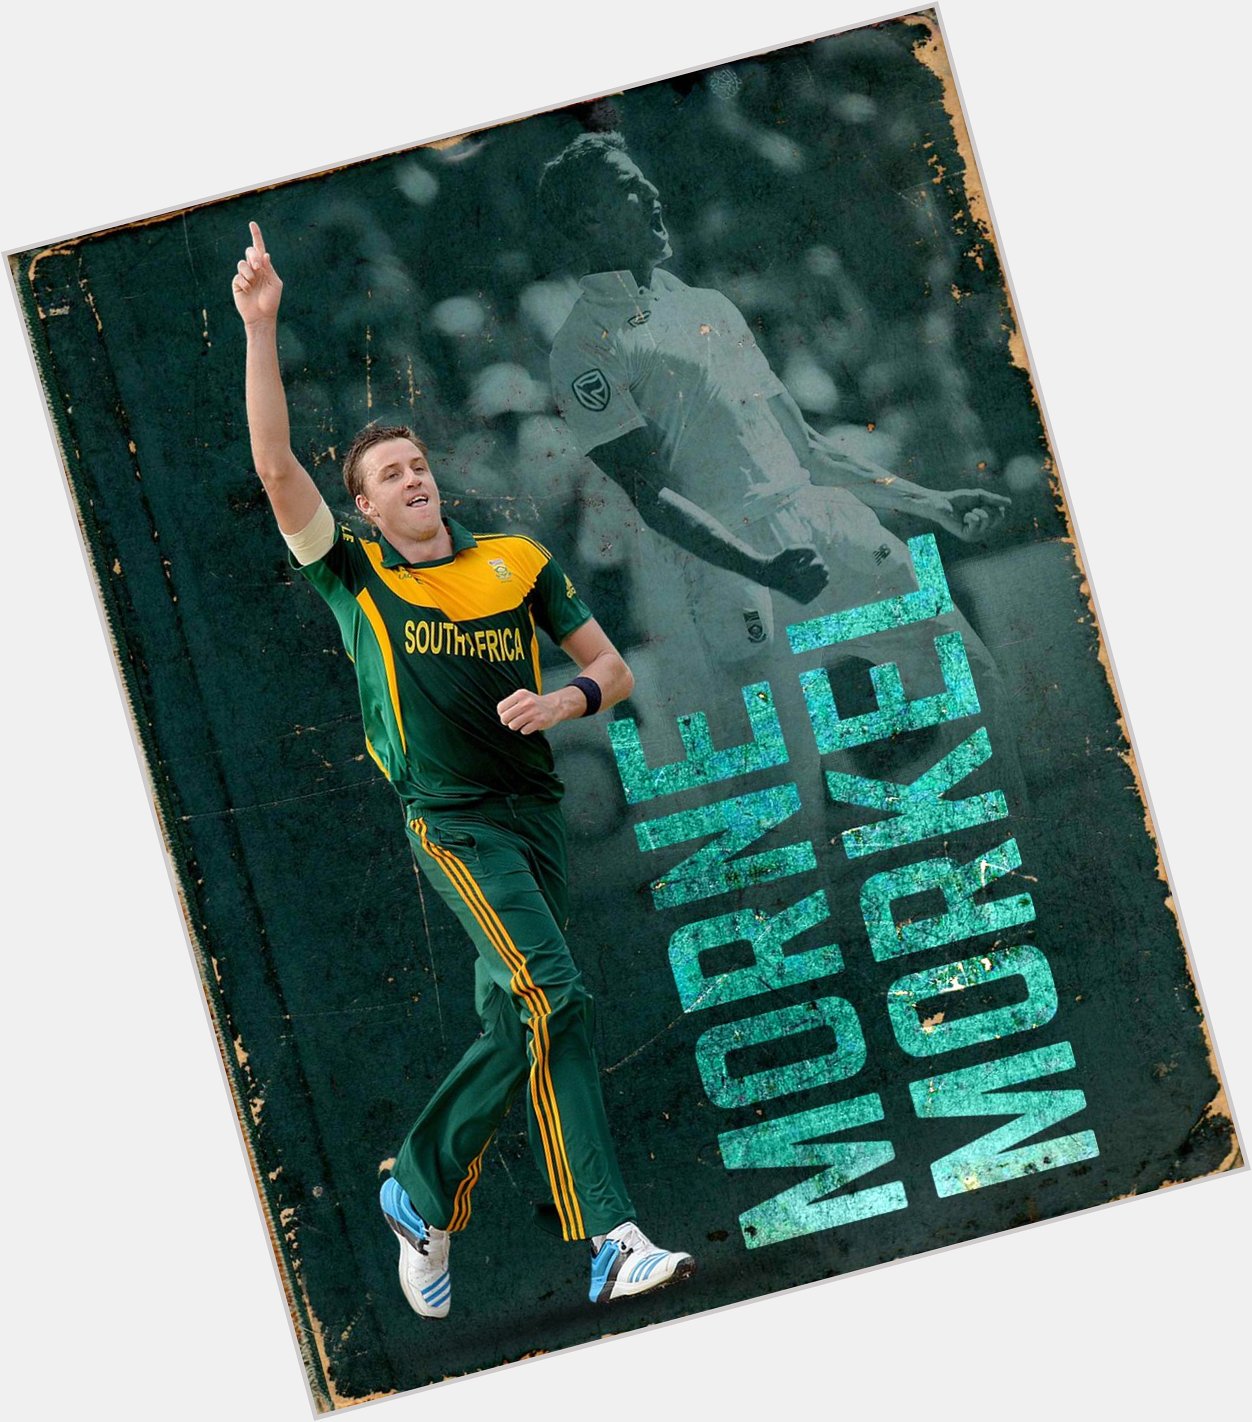   309 Test wickets  188 ODI wickets  47 T20I wickets 

Wishing a very Happy Birthday to Morne Morkel 